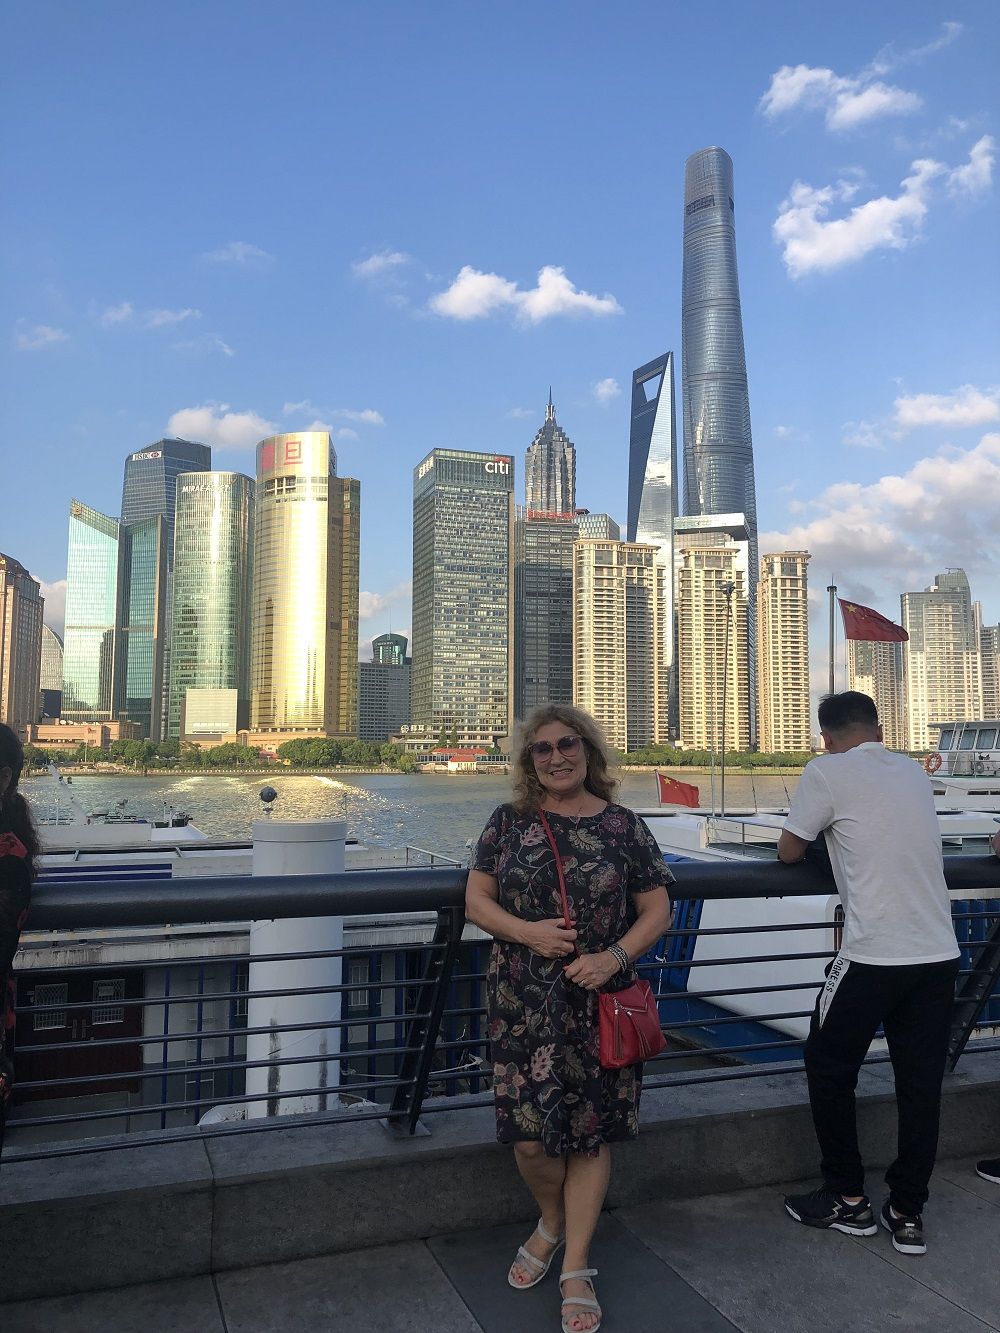 Китай, Шанхай, Сентябрь 2019 (30th SHANGHAI TOURISM FESTIVAL 2019)